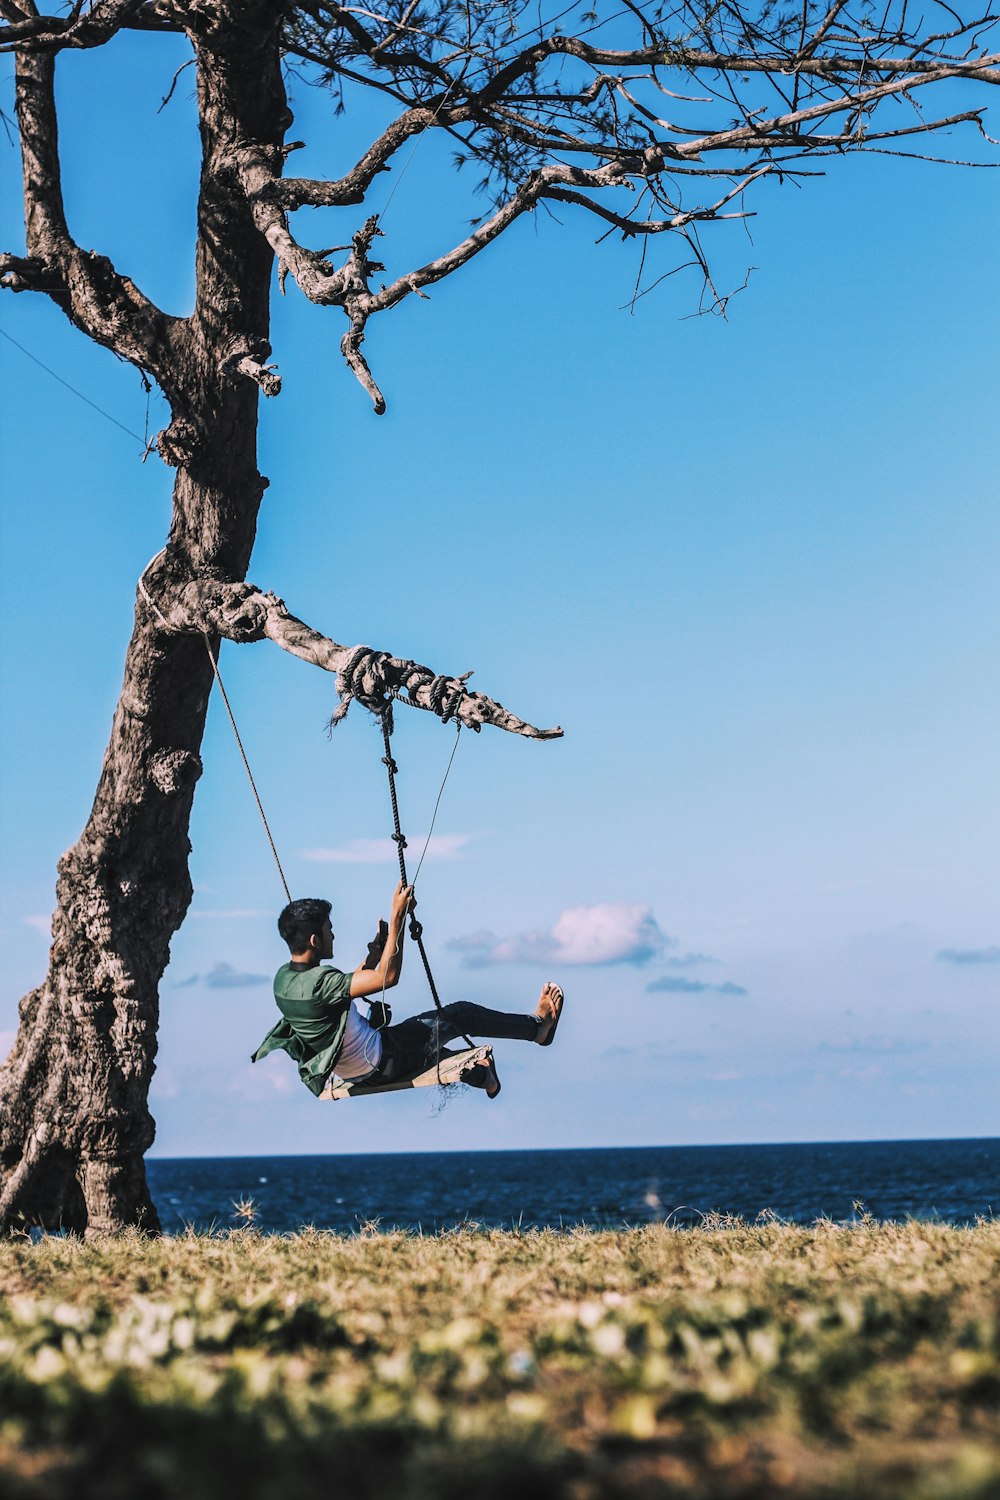 man on swing mounted on tree near body of water